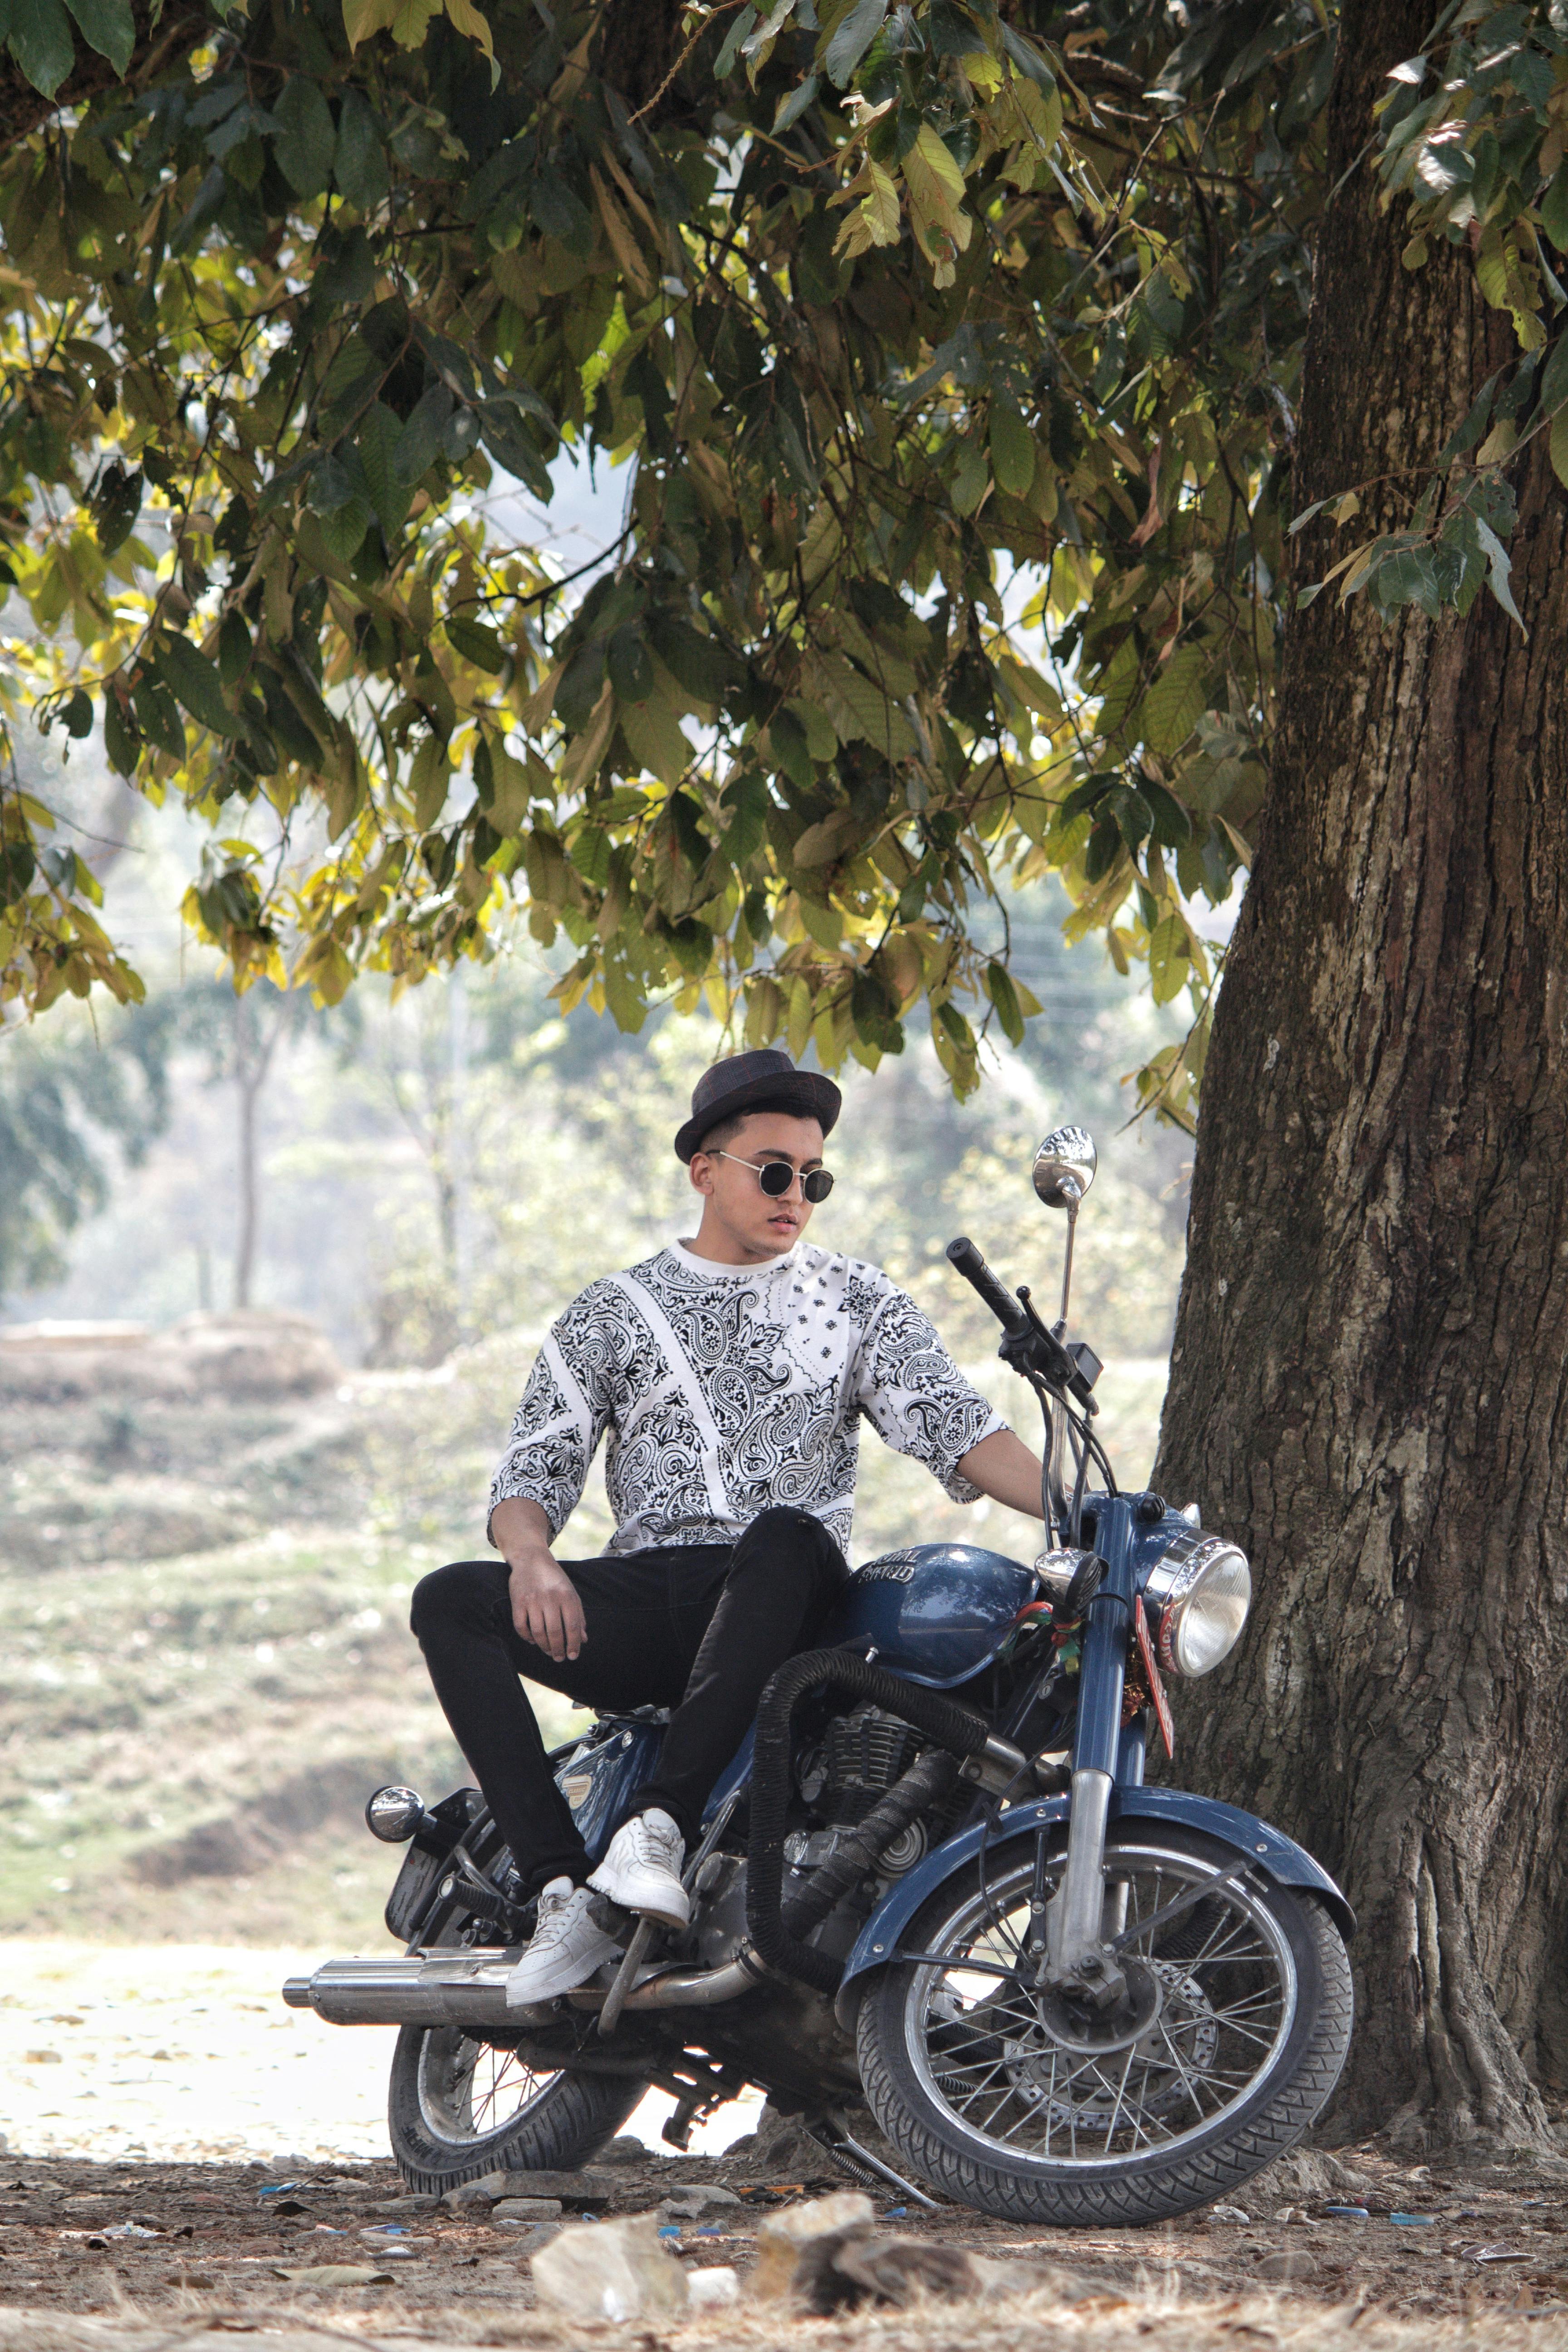 Photoshoot] Boys Stylish Photoshoot With Bike || Best Boys Pose With Bike  || SK EDITZ - YouTube